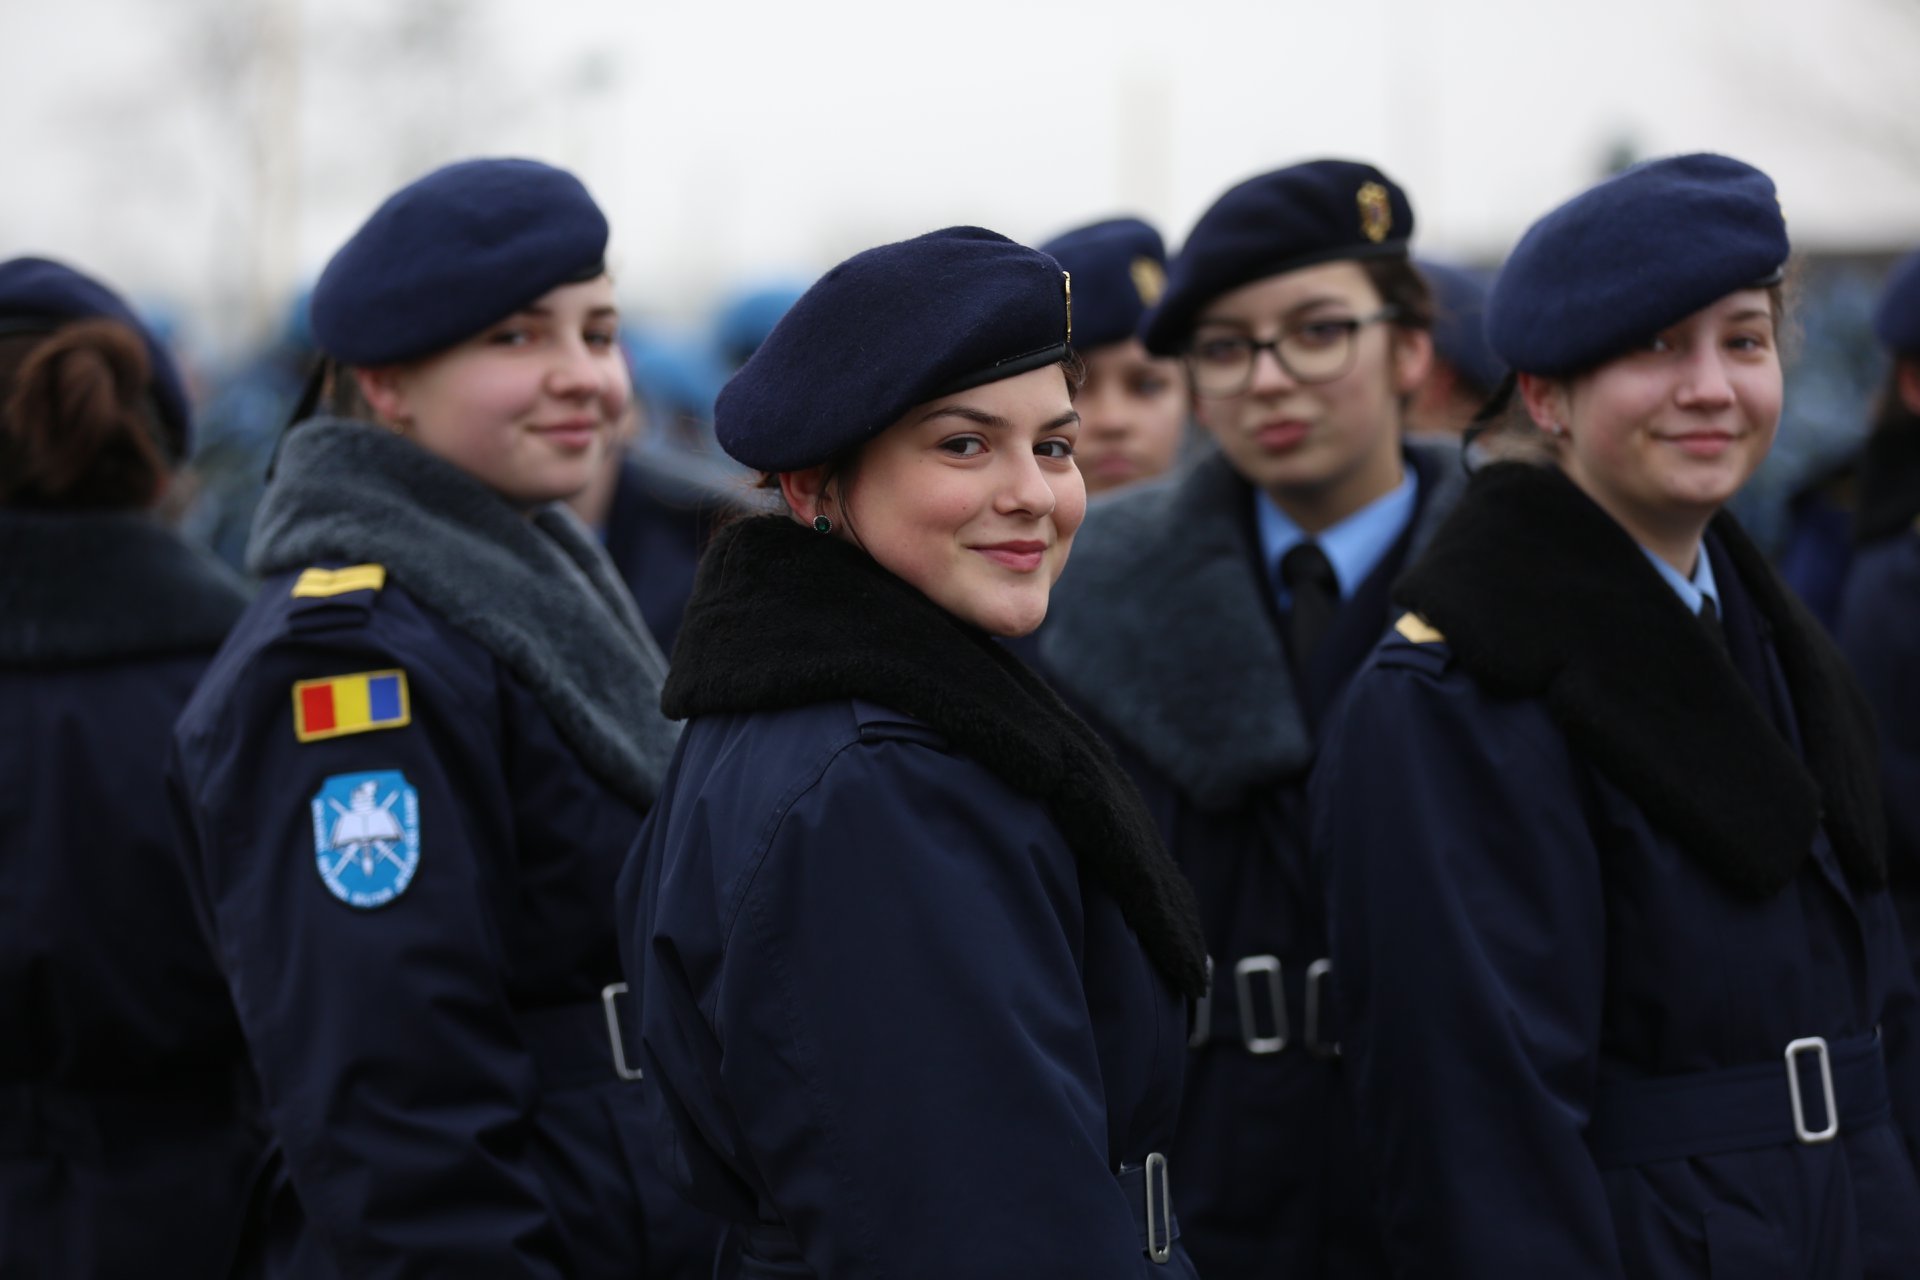 Parada militară 1 Decembrie 2019 București. Restricțile de trafic din Capitală - Imaginea 5